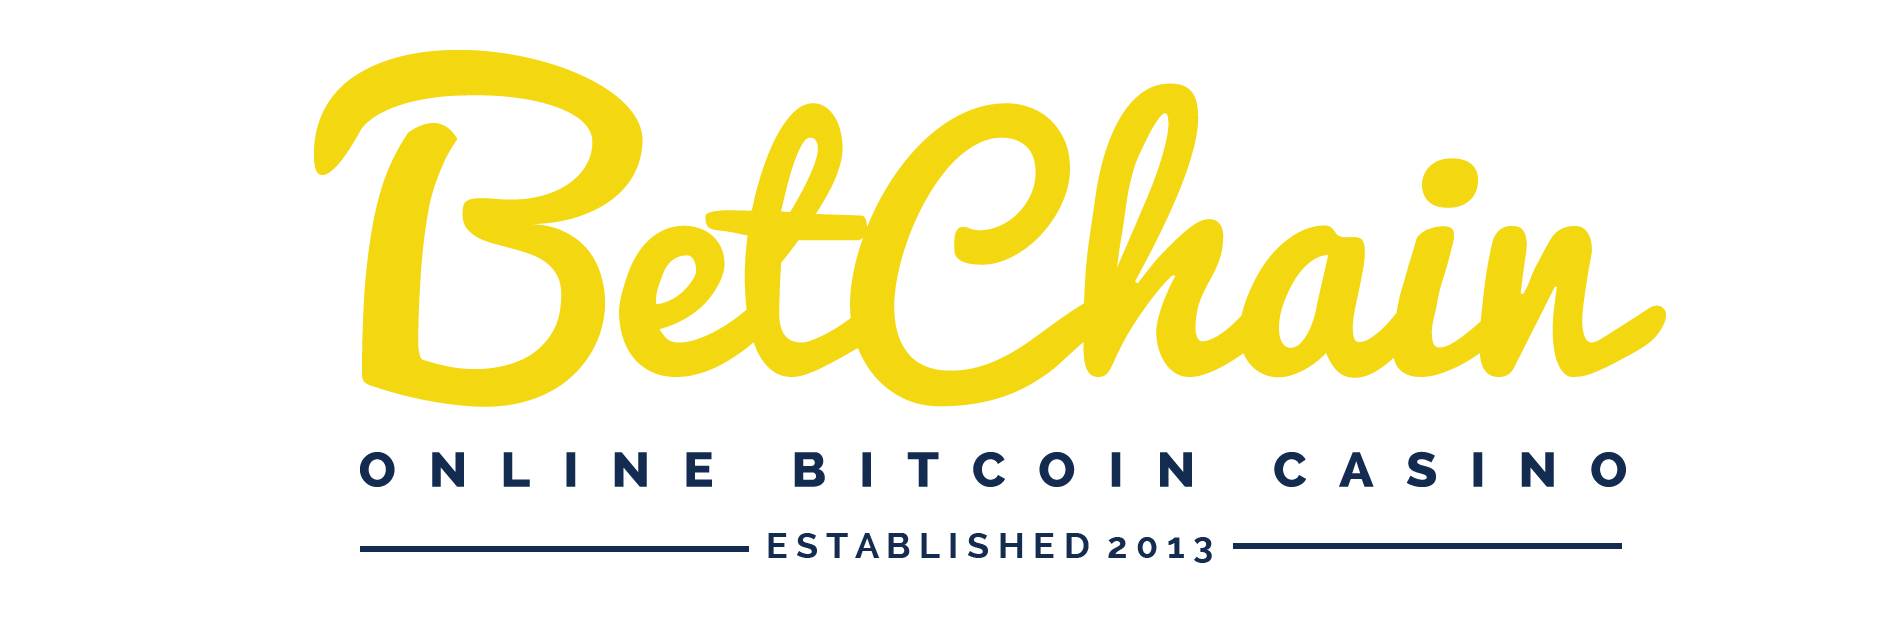 BetChain es un popular y alternativo destino de juegos de apuestas con Bitcoins
